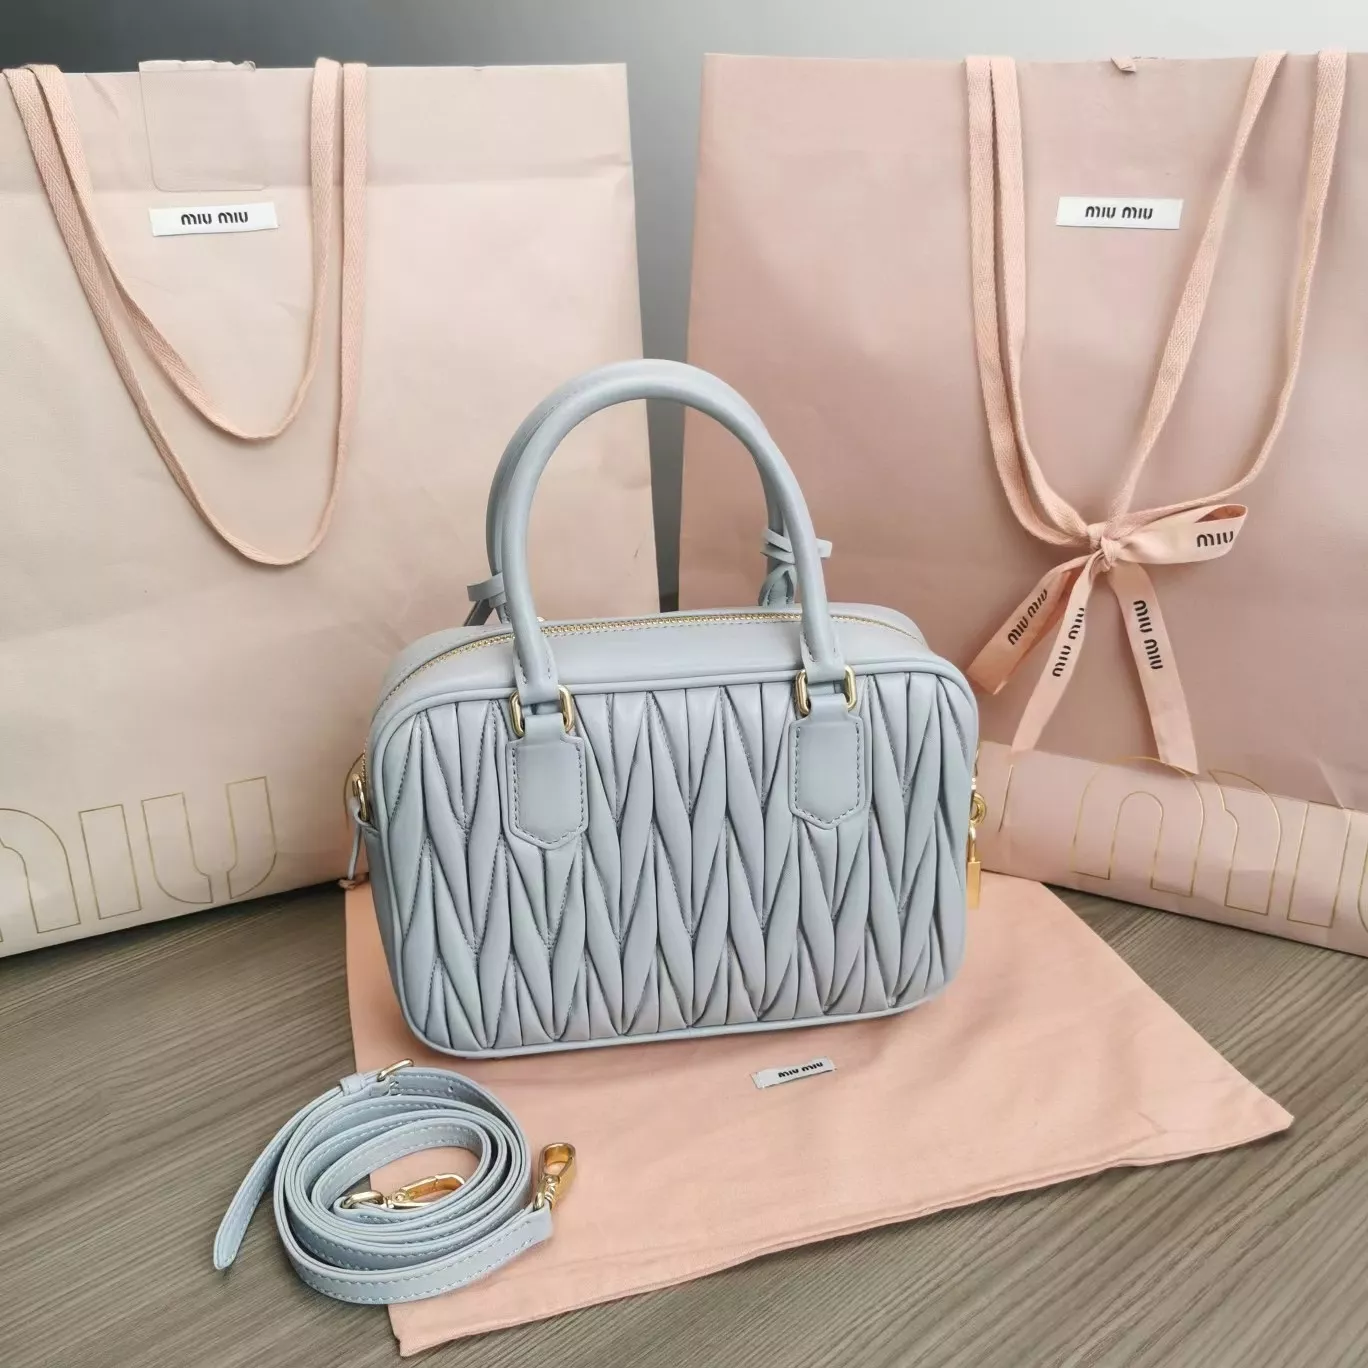 miumiuのバッグは本当にきれいで、この色はとてもきれいです。の画像 (1枚目)